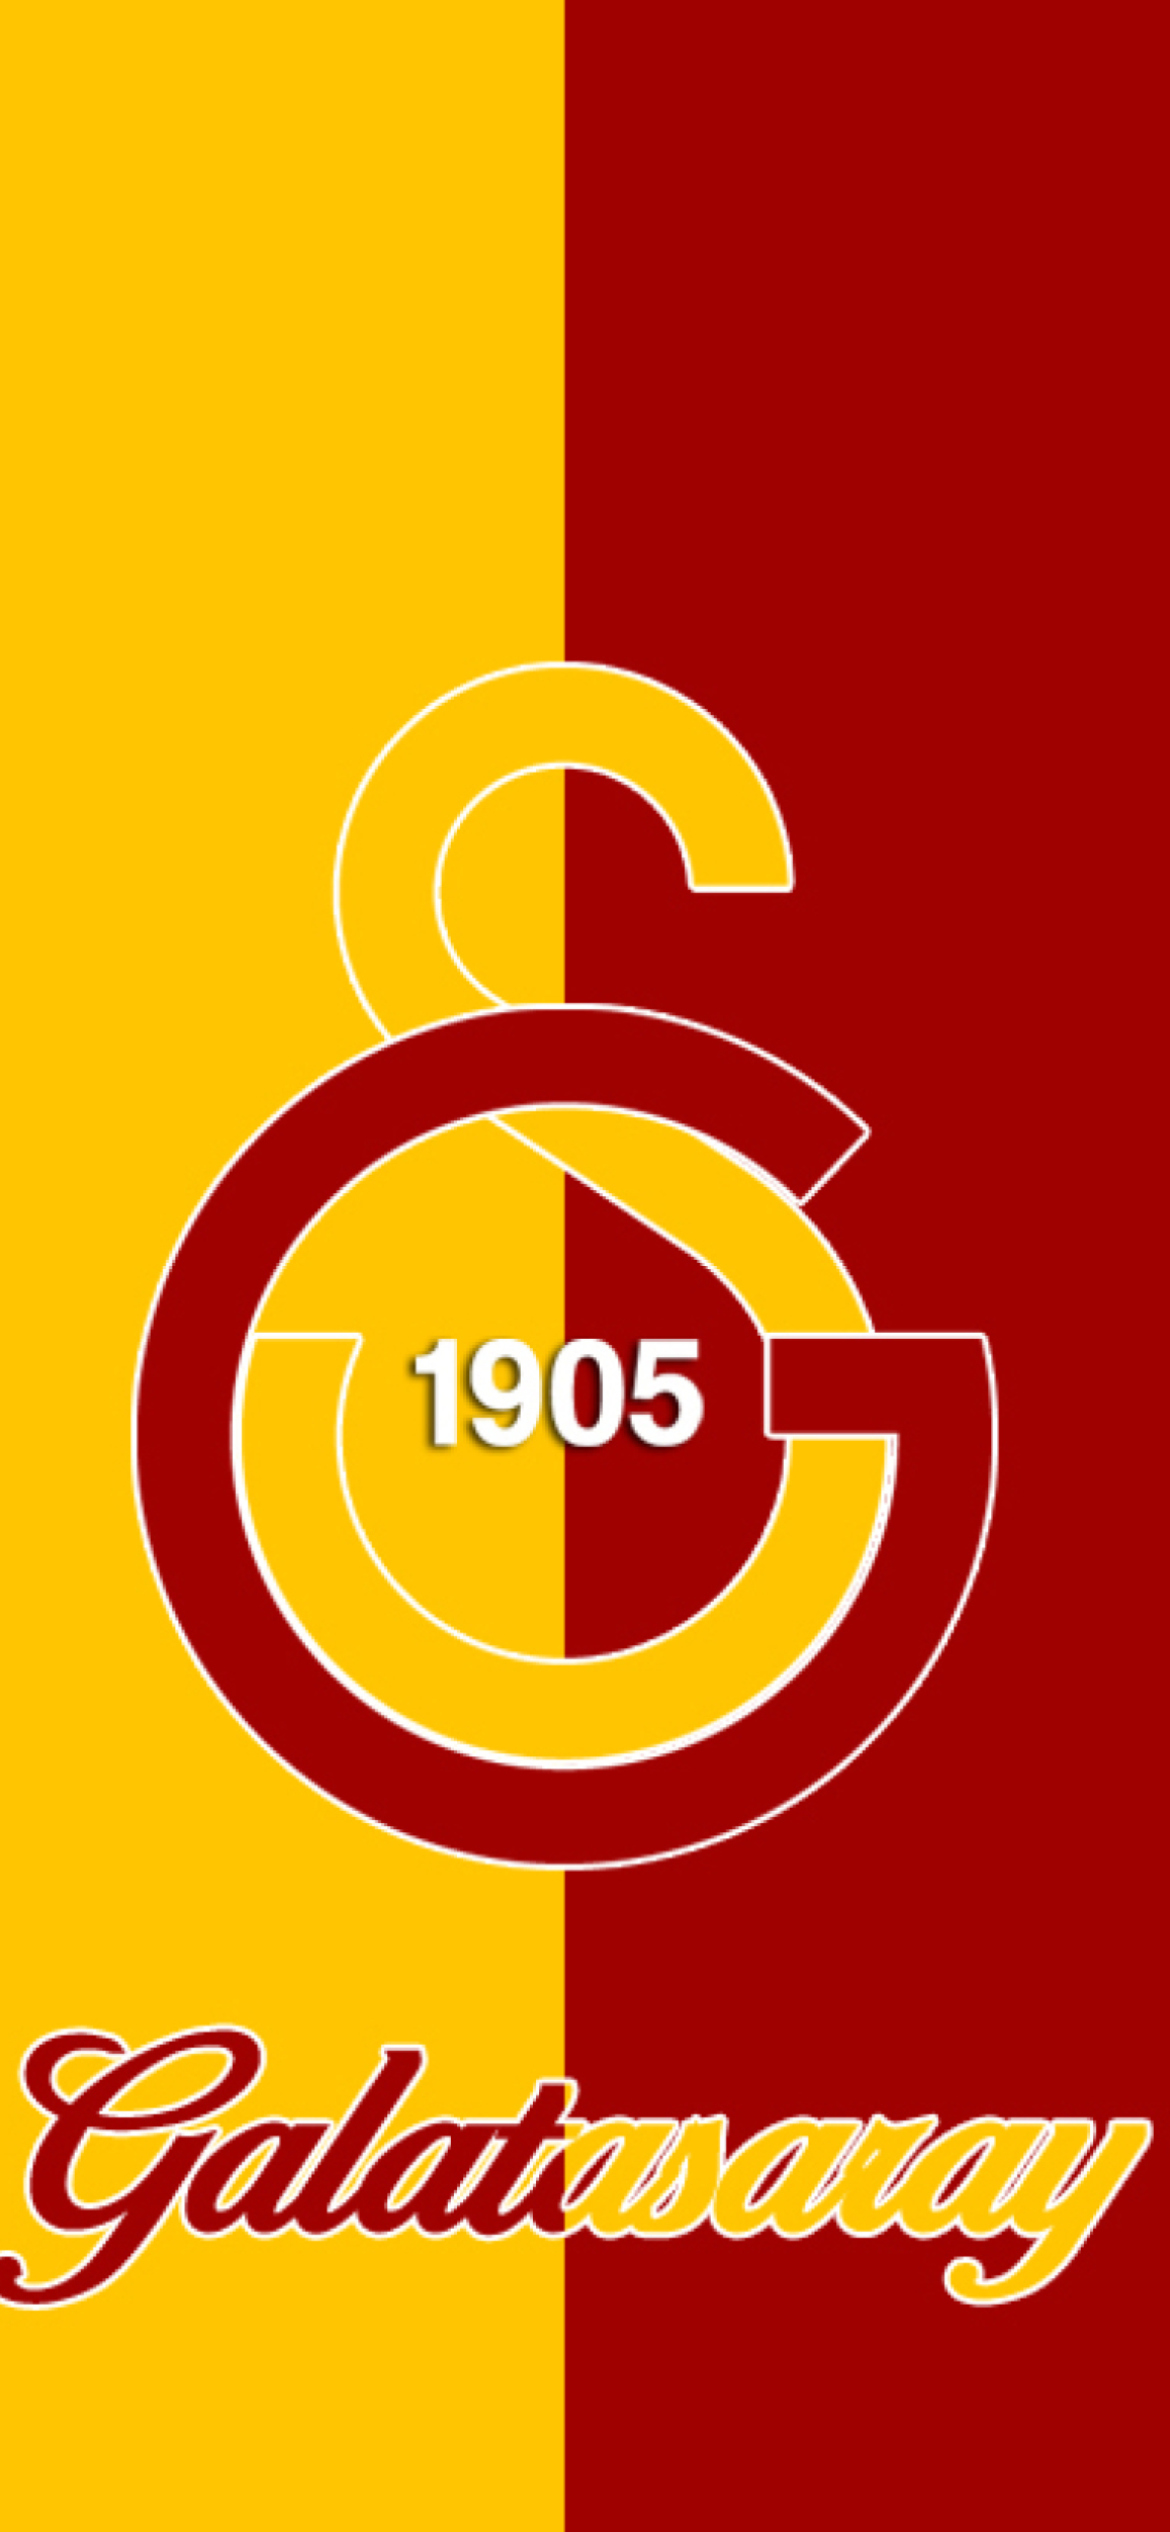 Sfondi Galatasaray 1170x2532